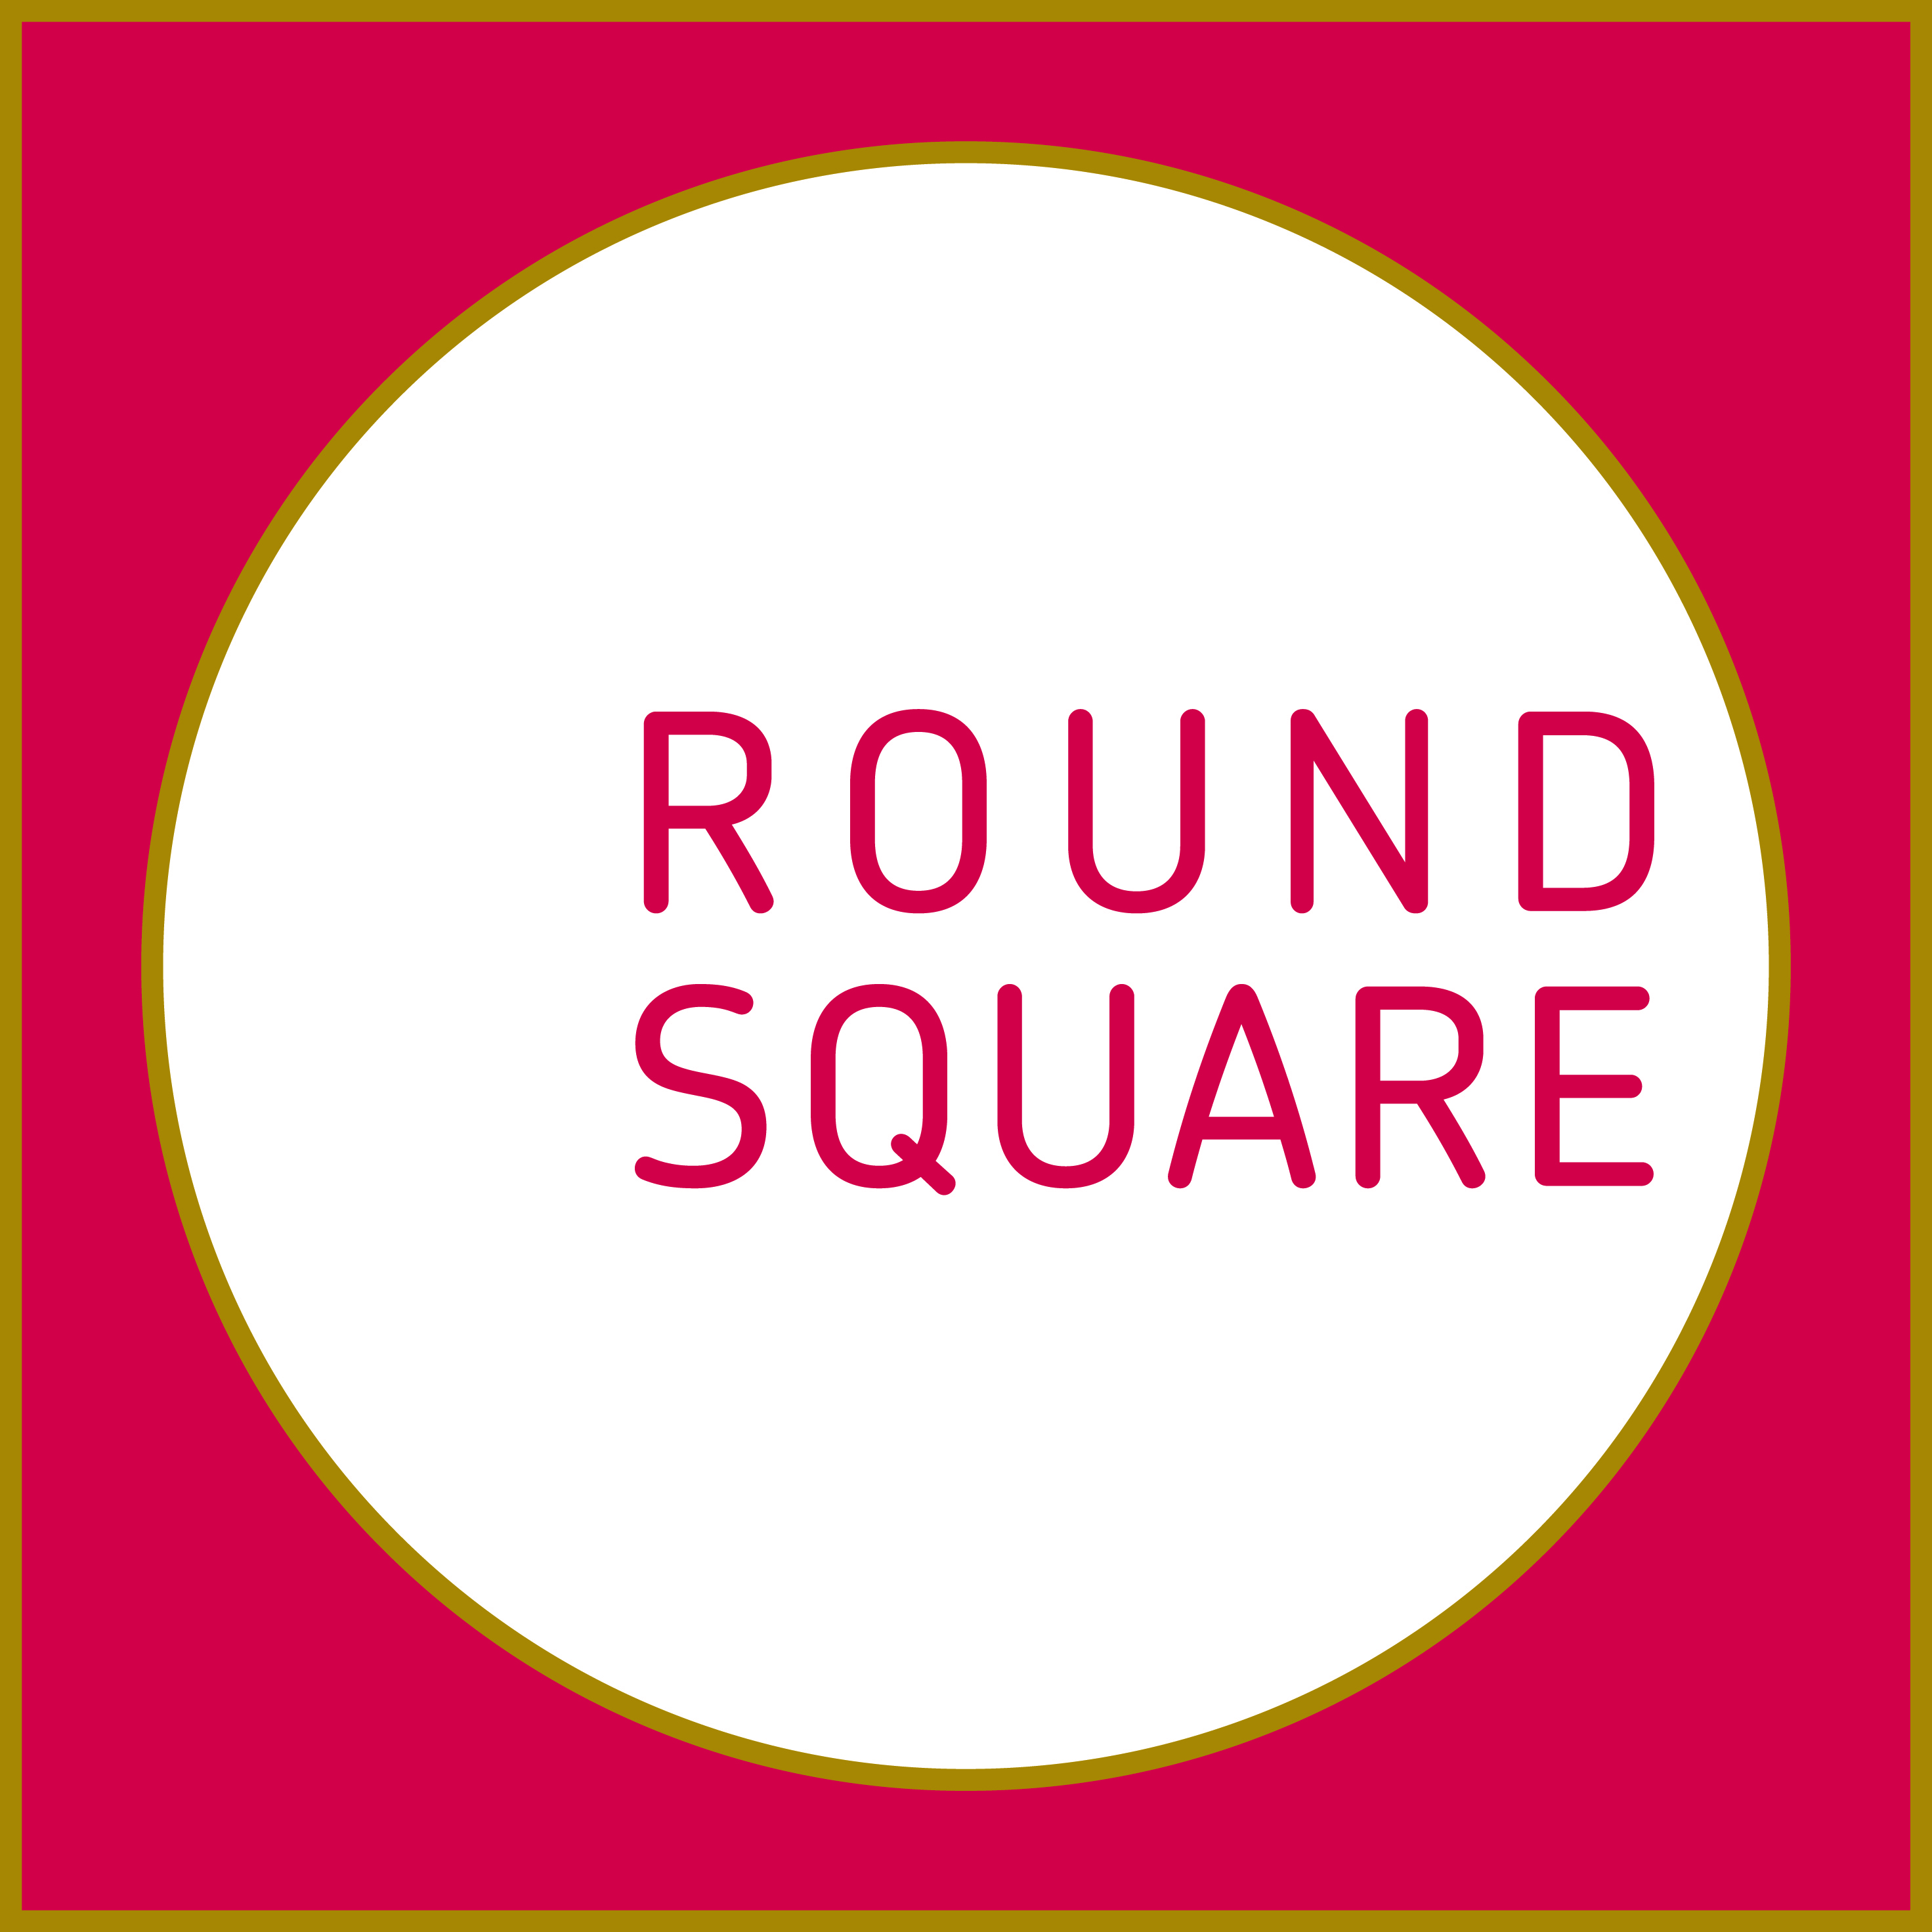 Round round you know. Square логотип. Round Square. Круглый логотип в квадрате. Rounds логотип.